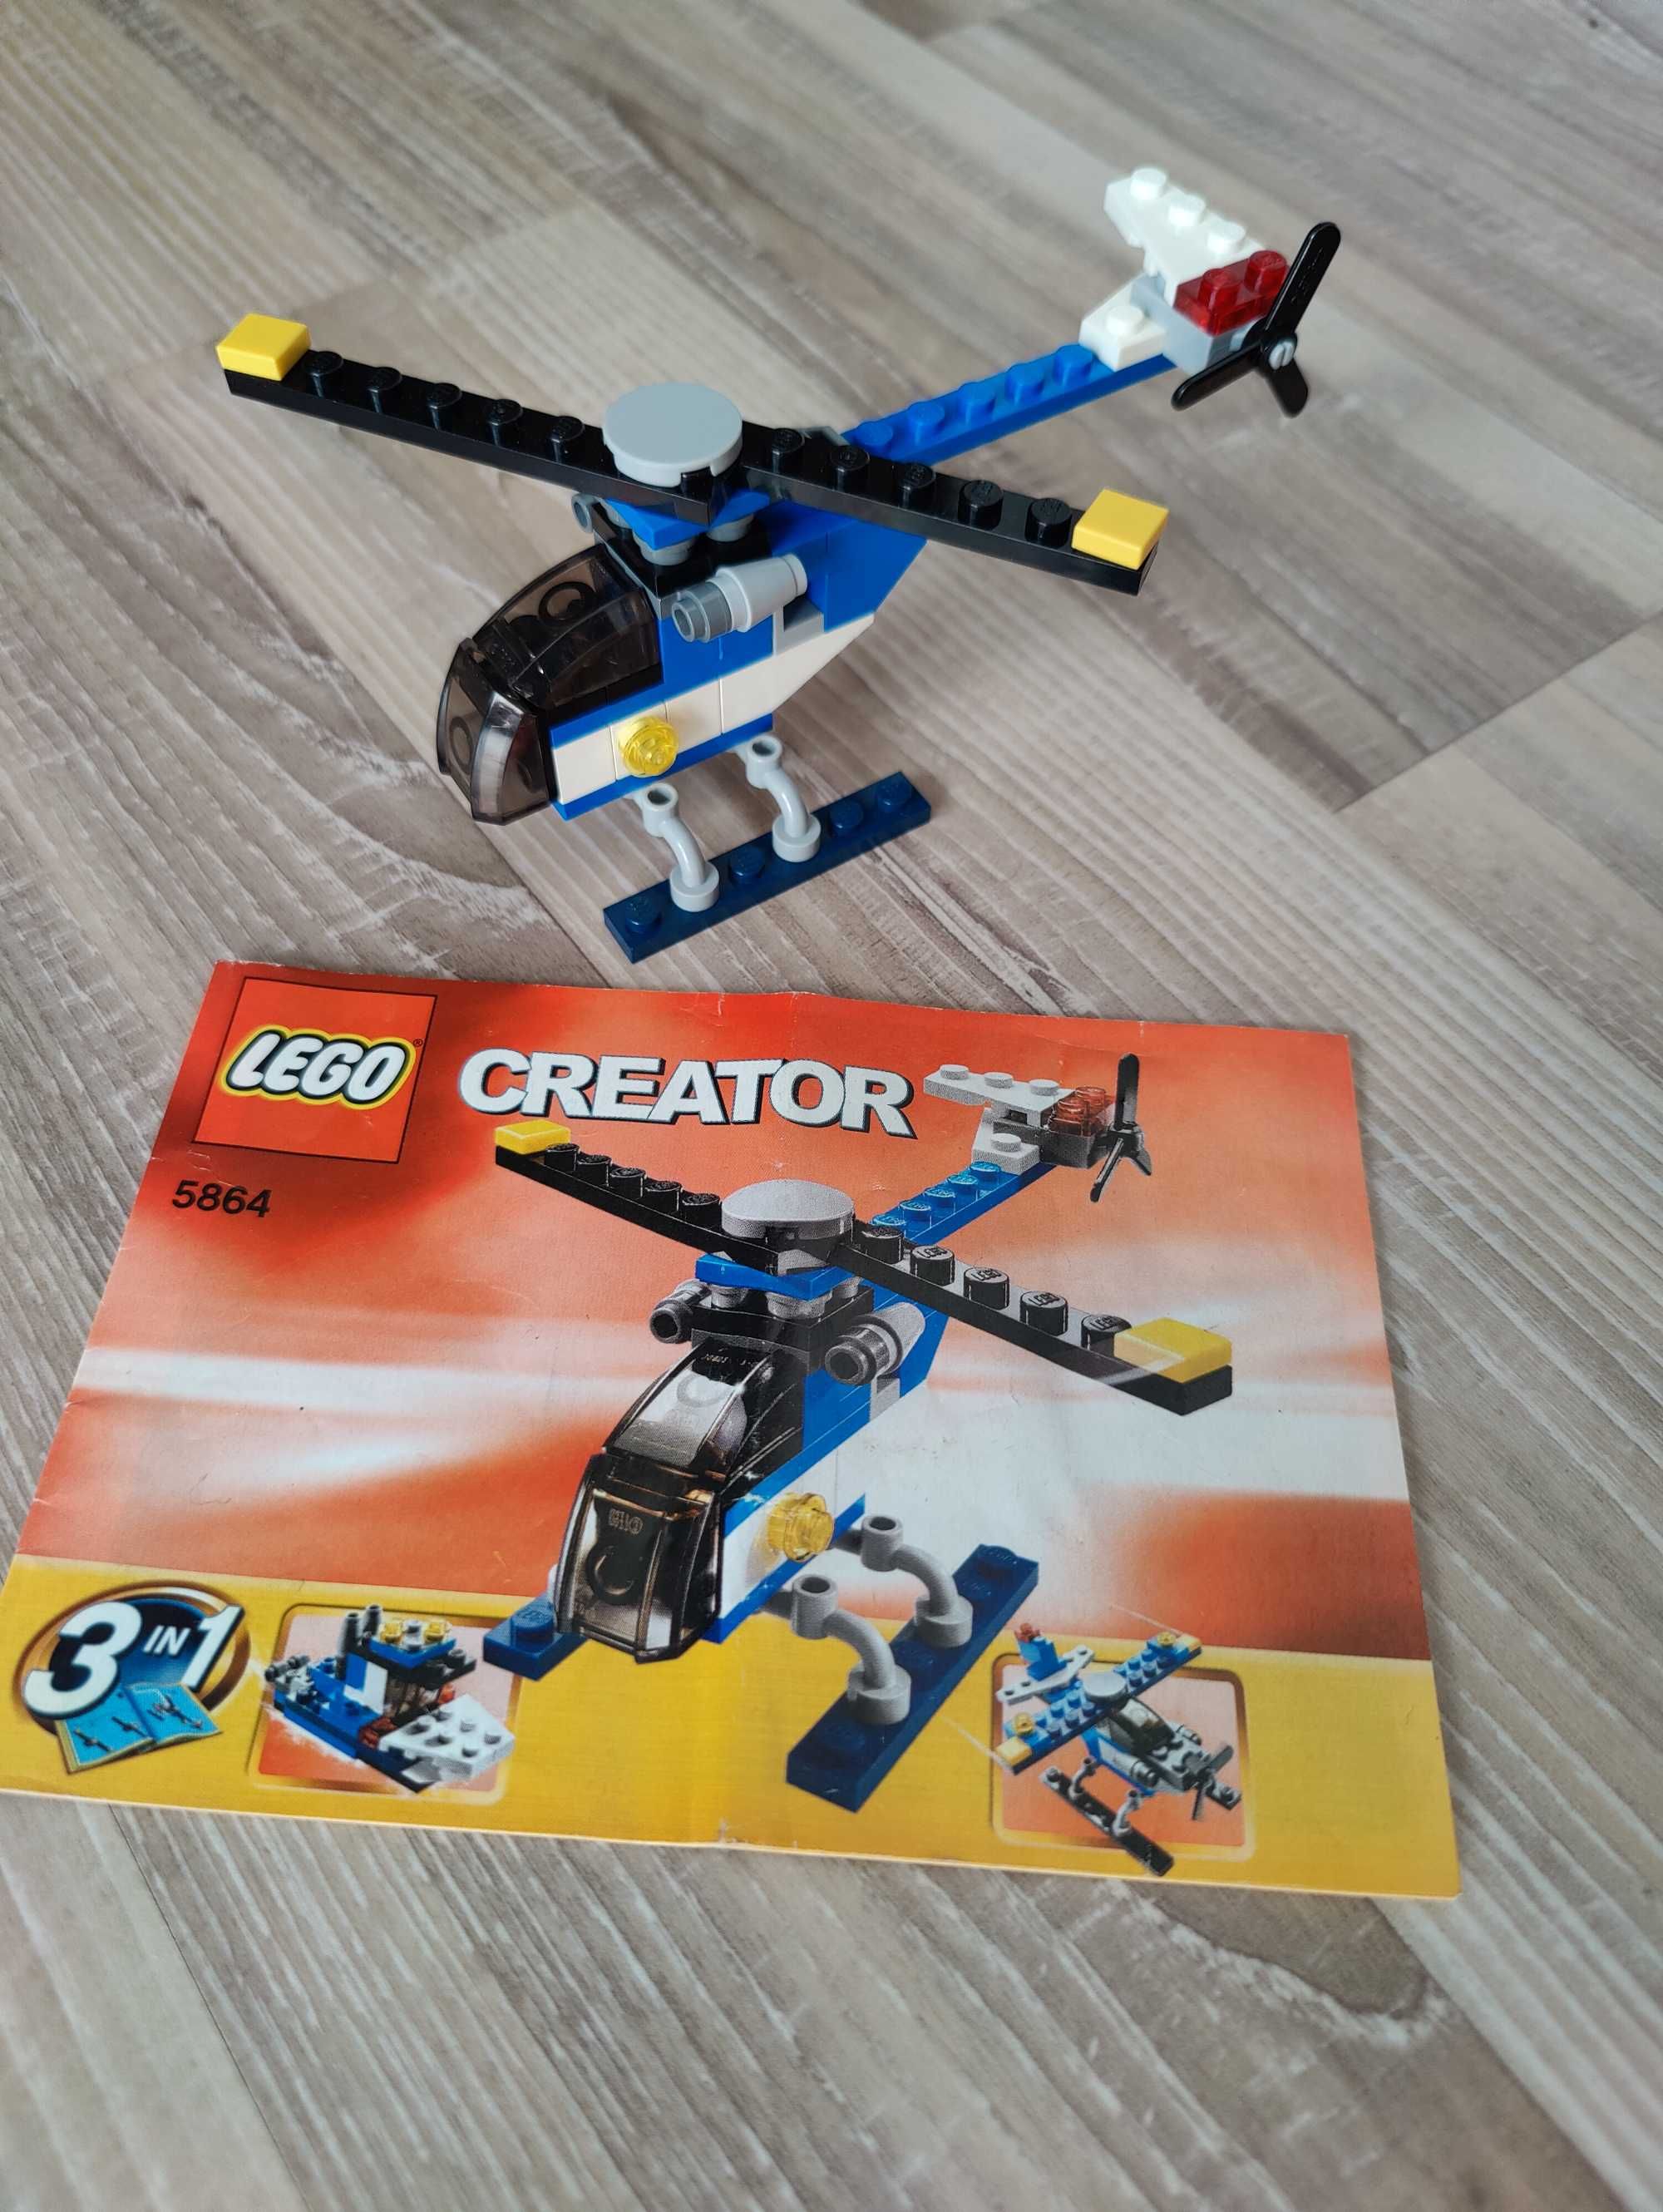 LEGO Creator 3in1 - 31060, 6745, 31022, 4995, 5763, 31086, 5864, 5866